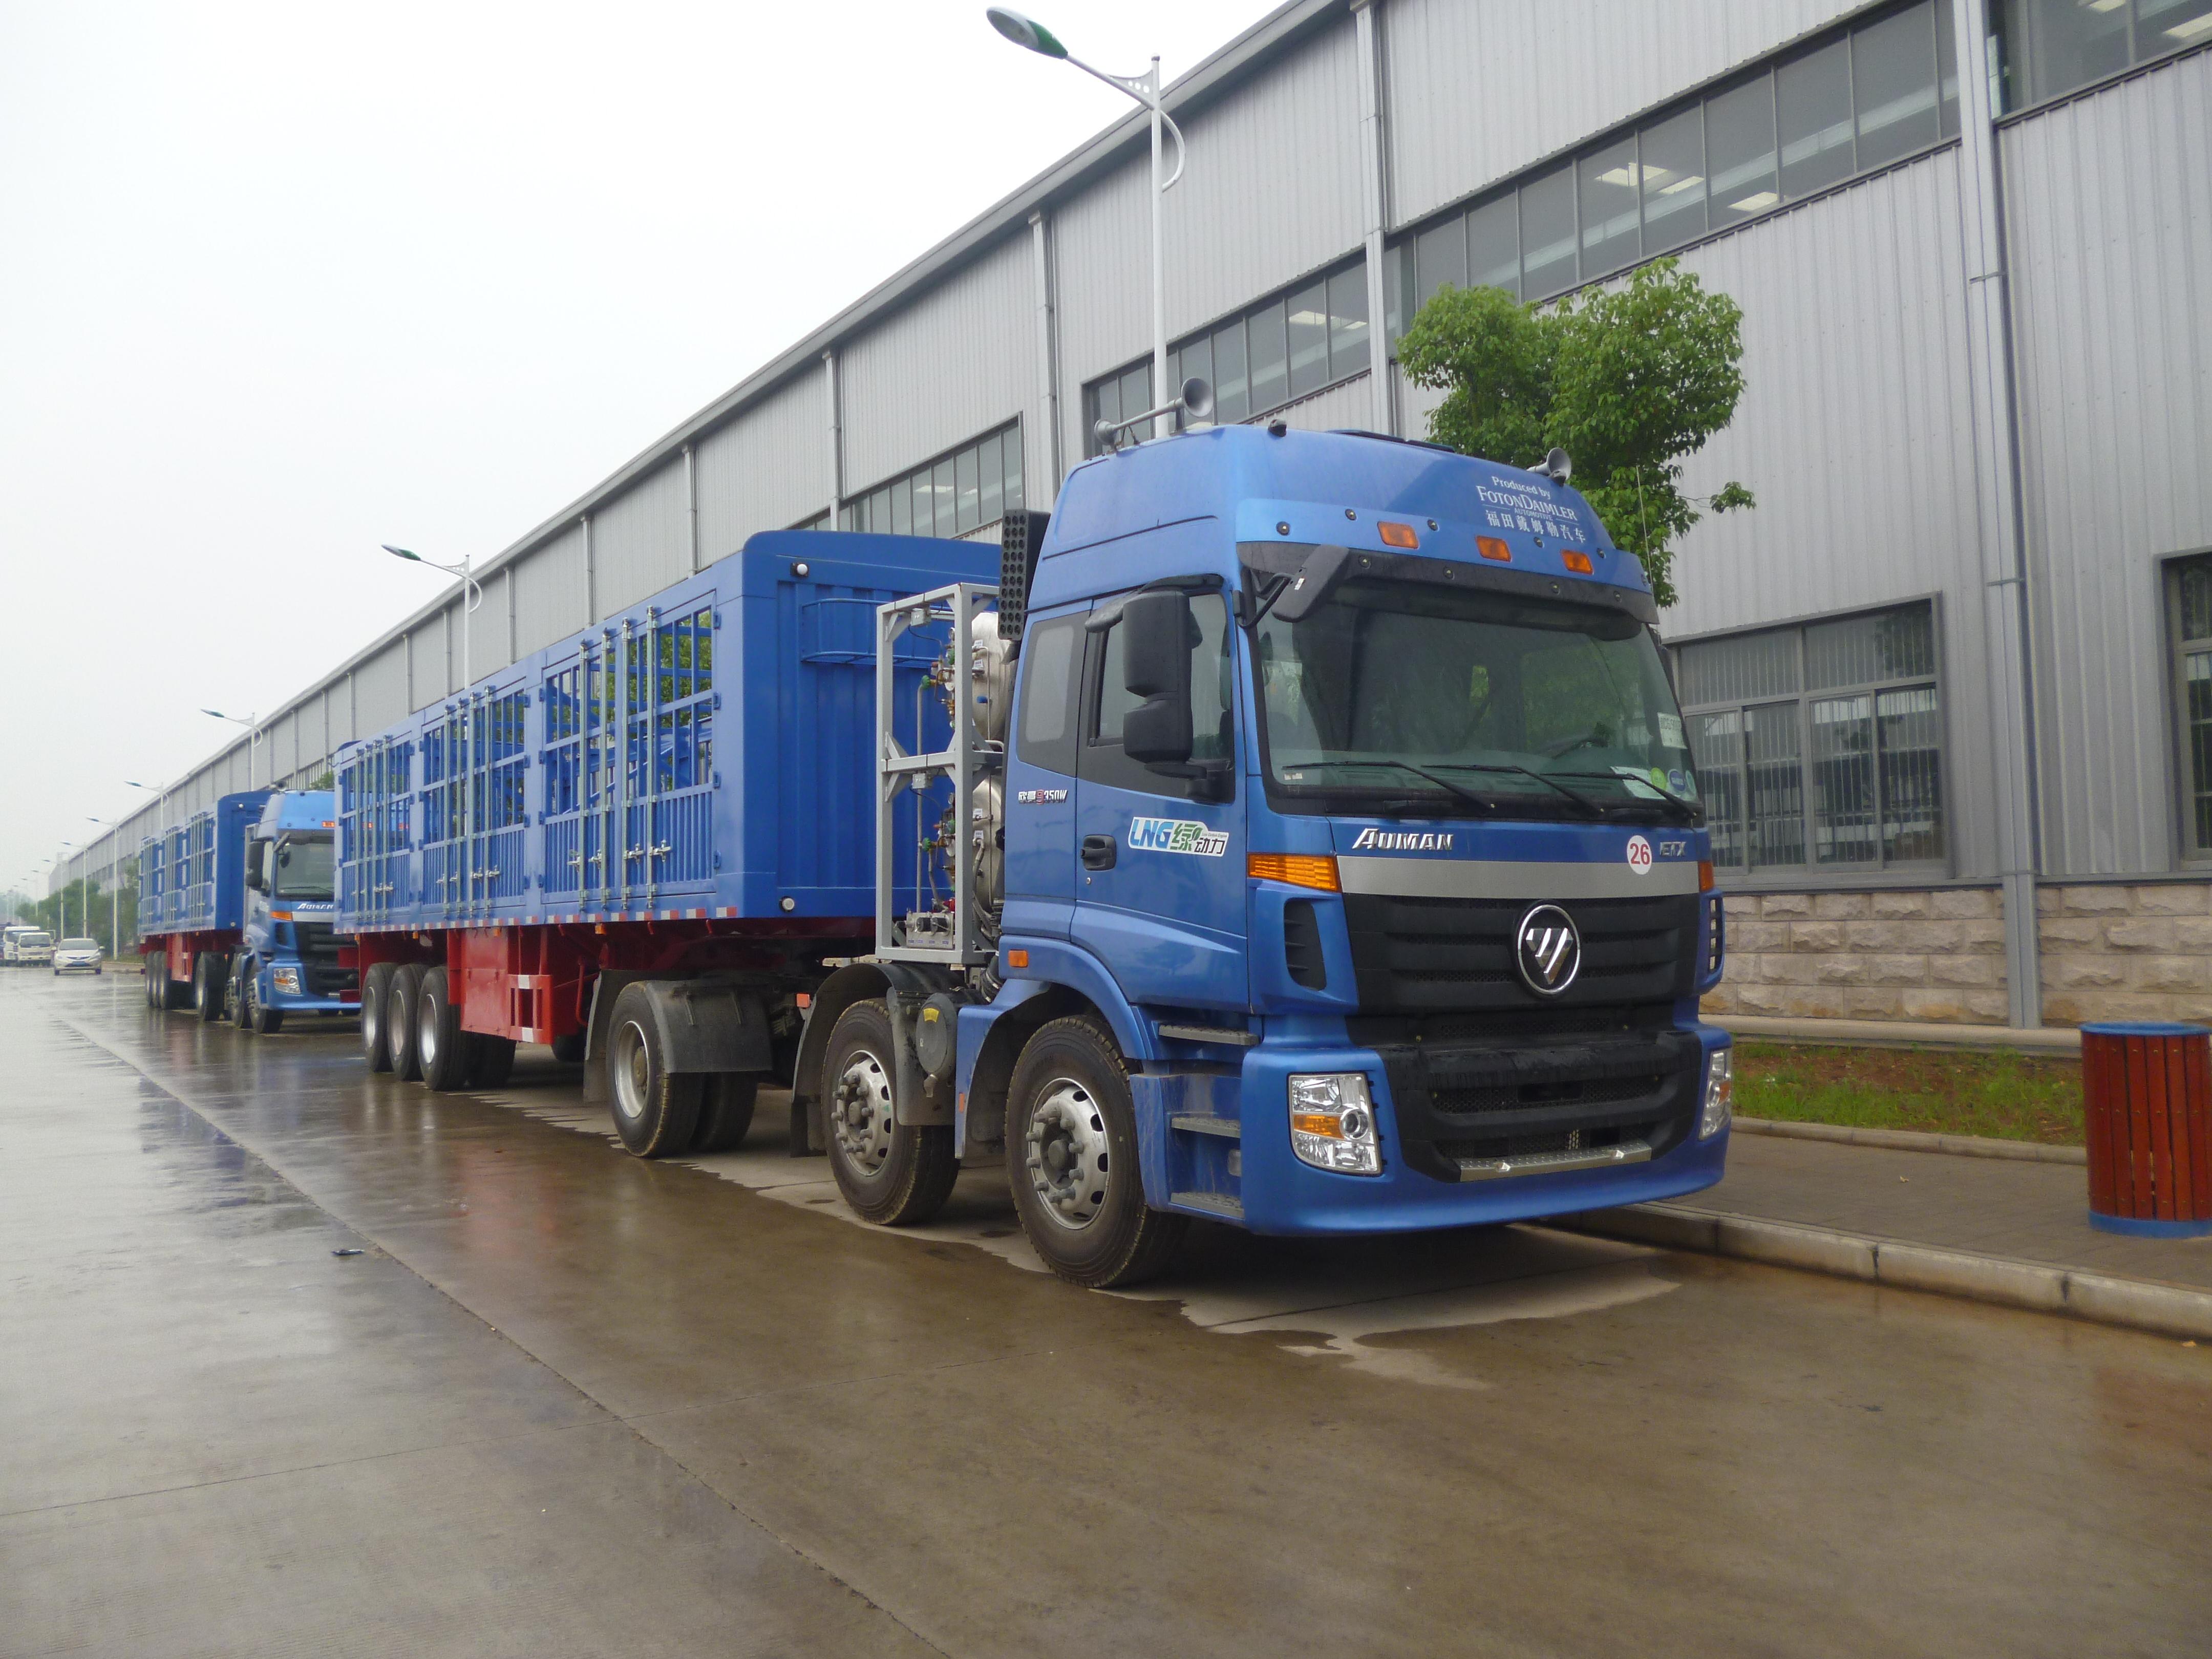 为什么中国的卡车大多是蓝色的?